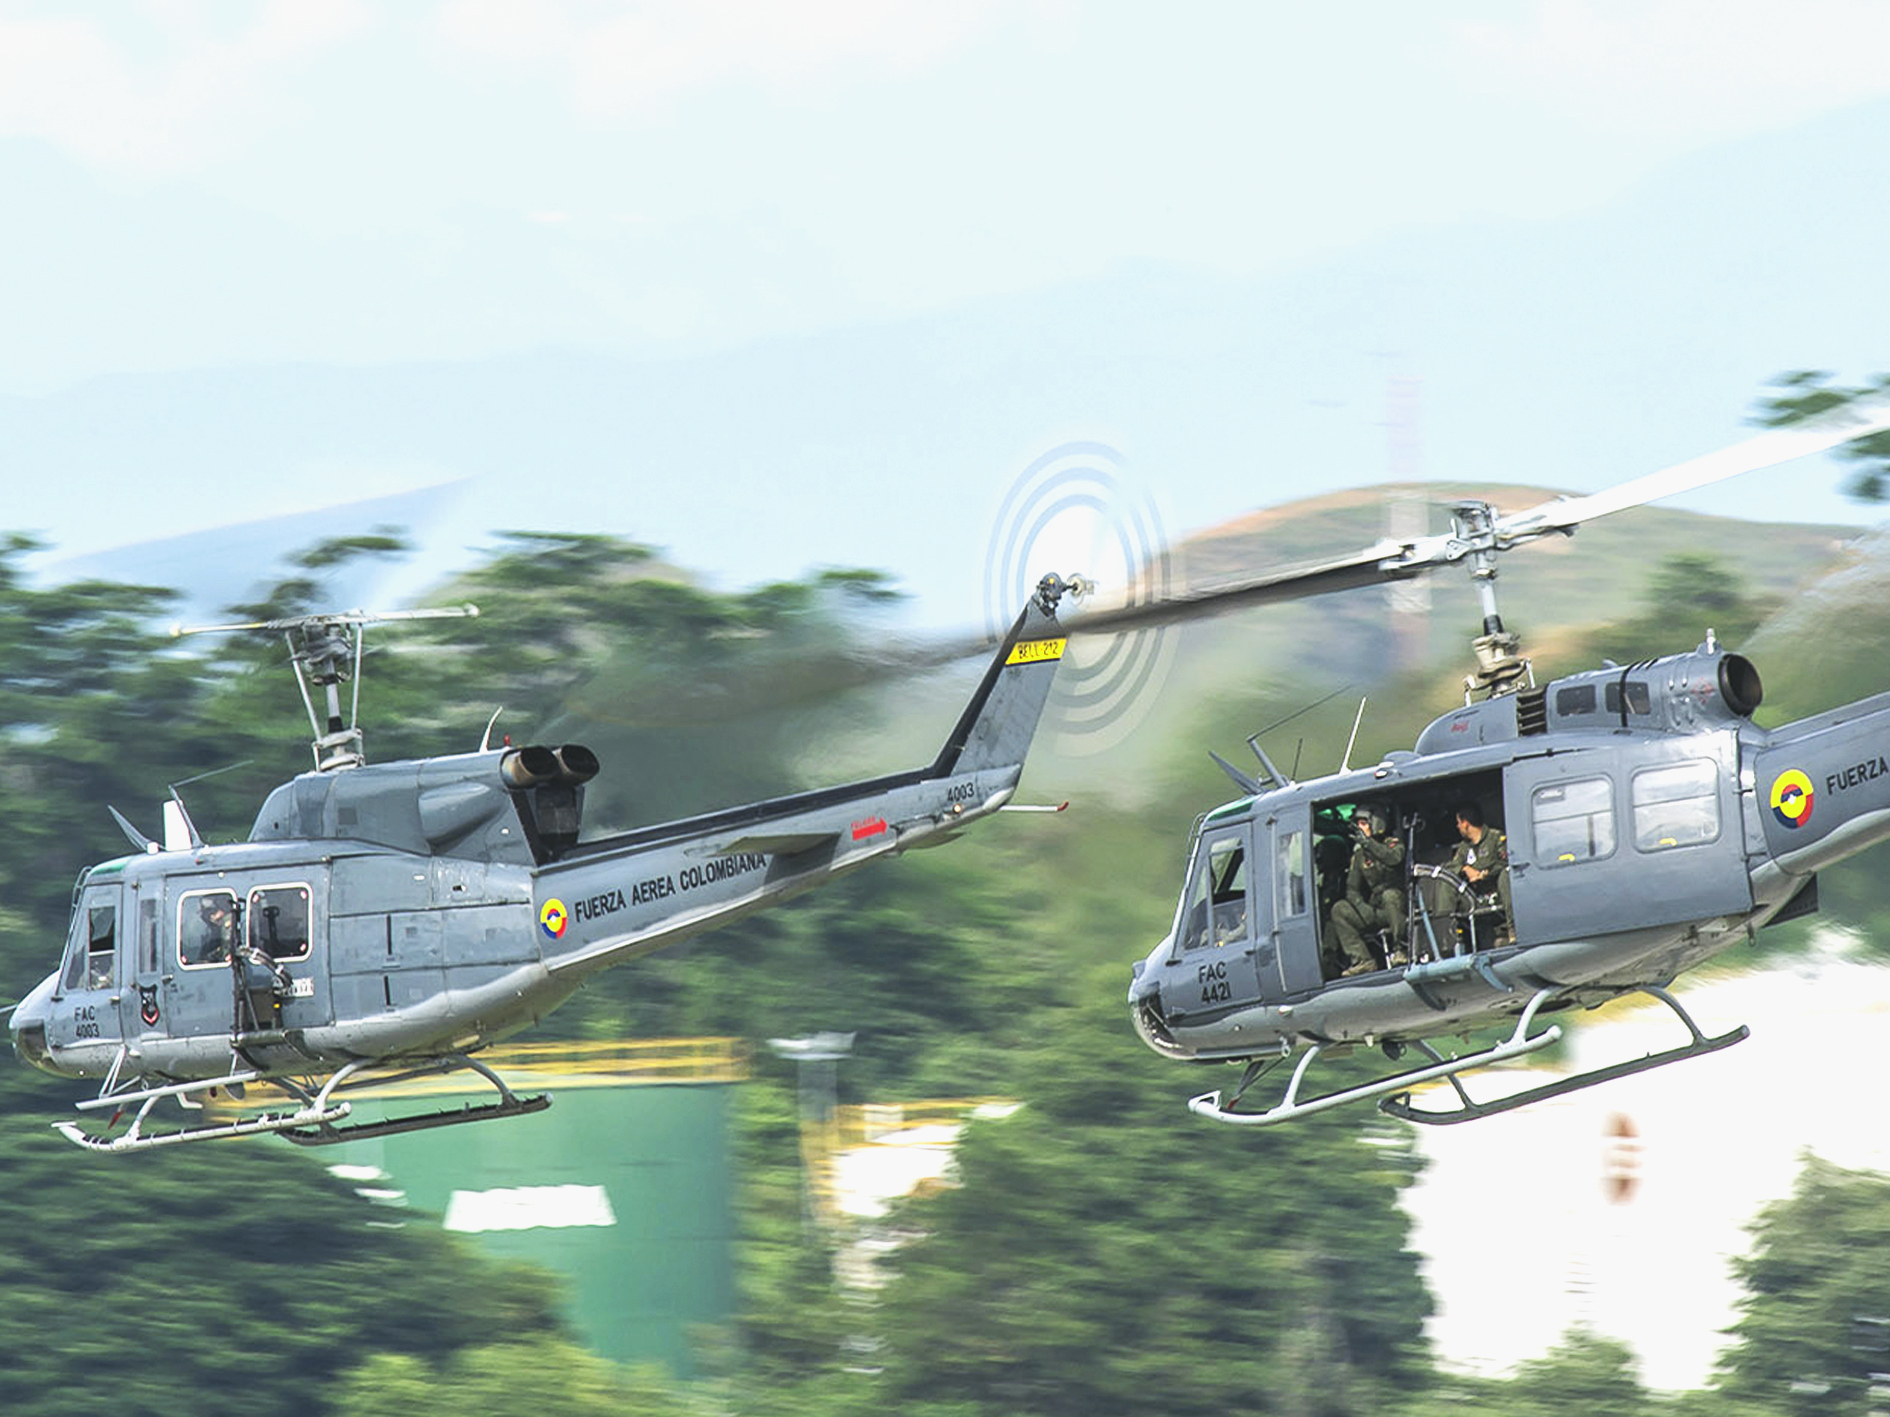 El helicóptero Bell 212 utilitario se puede configurar para misiones de ataque y transporte; mientras el Huey II Búho, adaptado con sistemas de armas, búsqueda y reconocimiento, proporcionan alta precisión en la neutralización objetivos en operaciones de orden público.